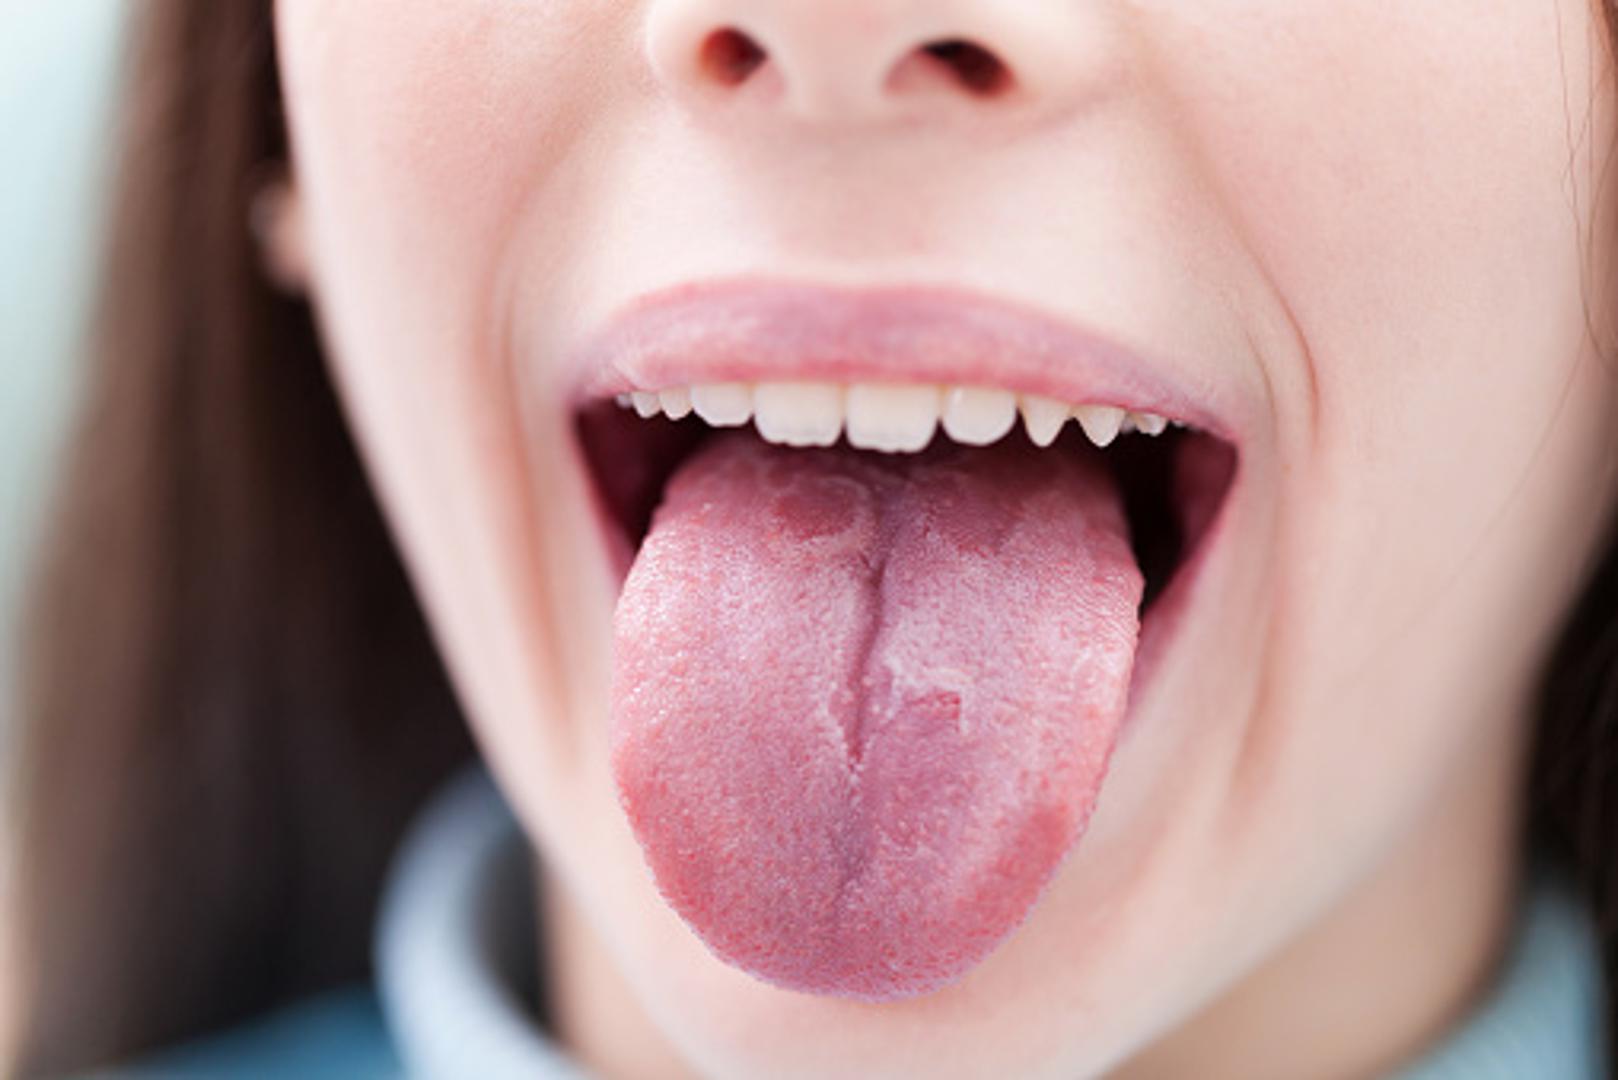 Crni jezik - Pretežno bezopasno stanje, ali neugodno za vidjeti. Uzroci mogu biti bakterije, gljivice, dehidracija, ispijanje previše kave...Ako potraje dulje od 10 dana, javite se liječniku 